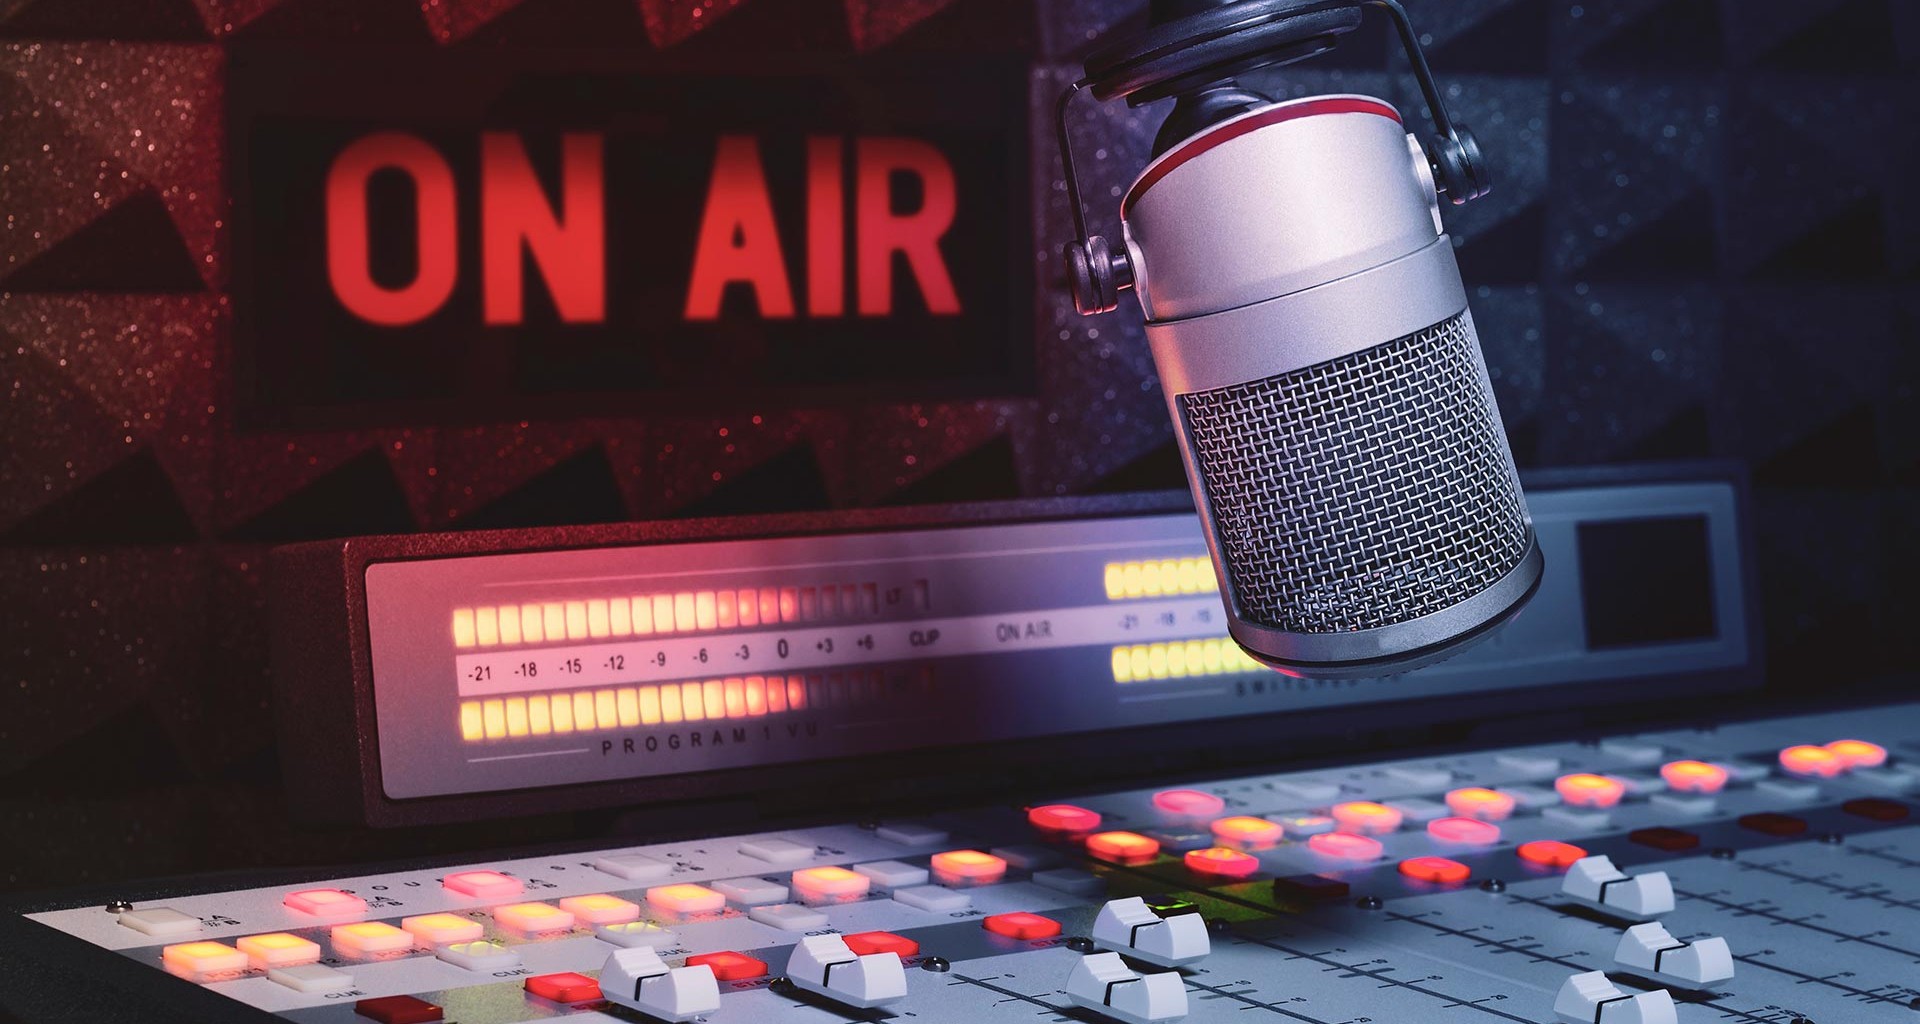 Radio 93.7 FM quiere relanzar el gentilicio guaireño